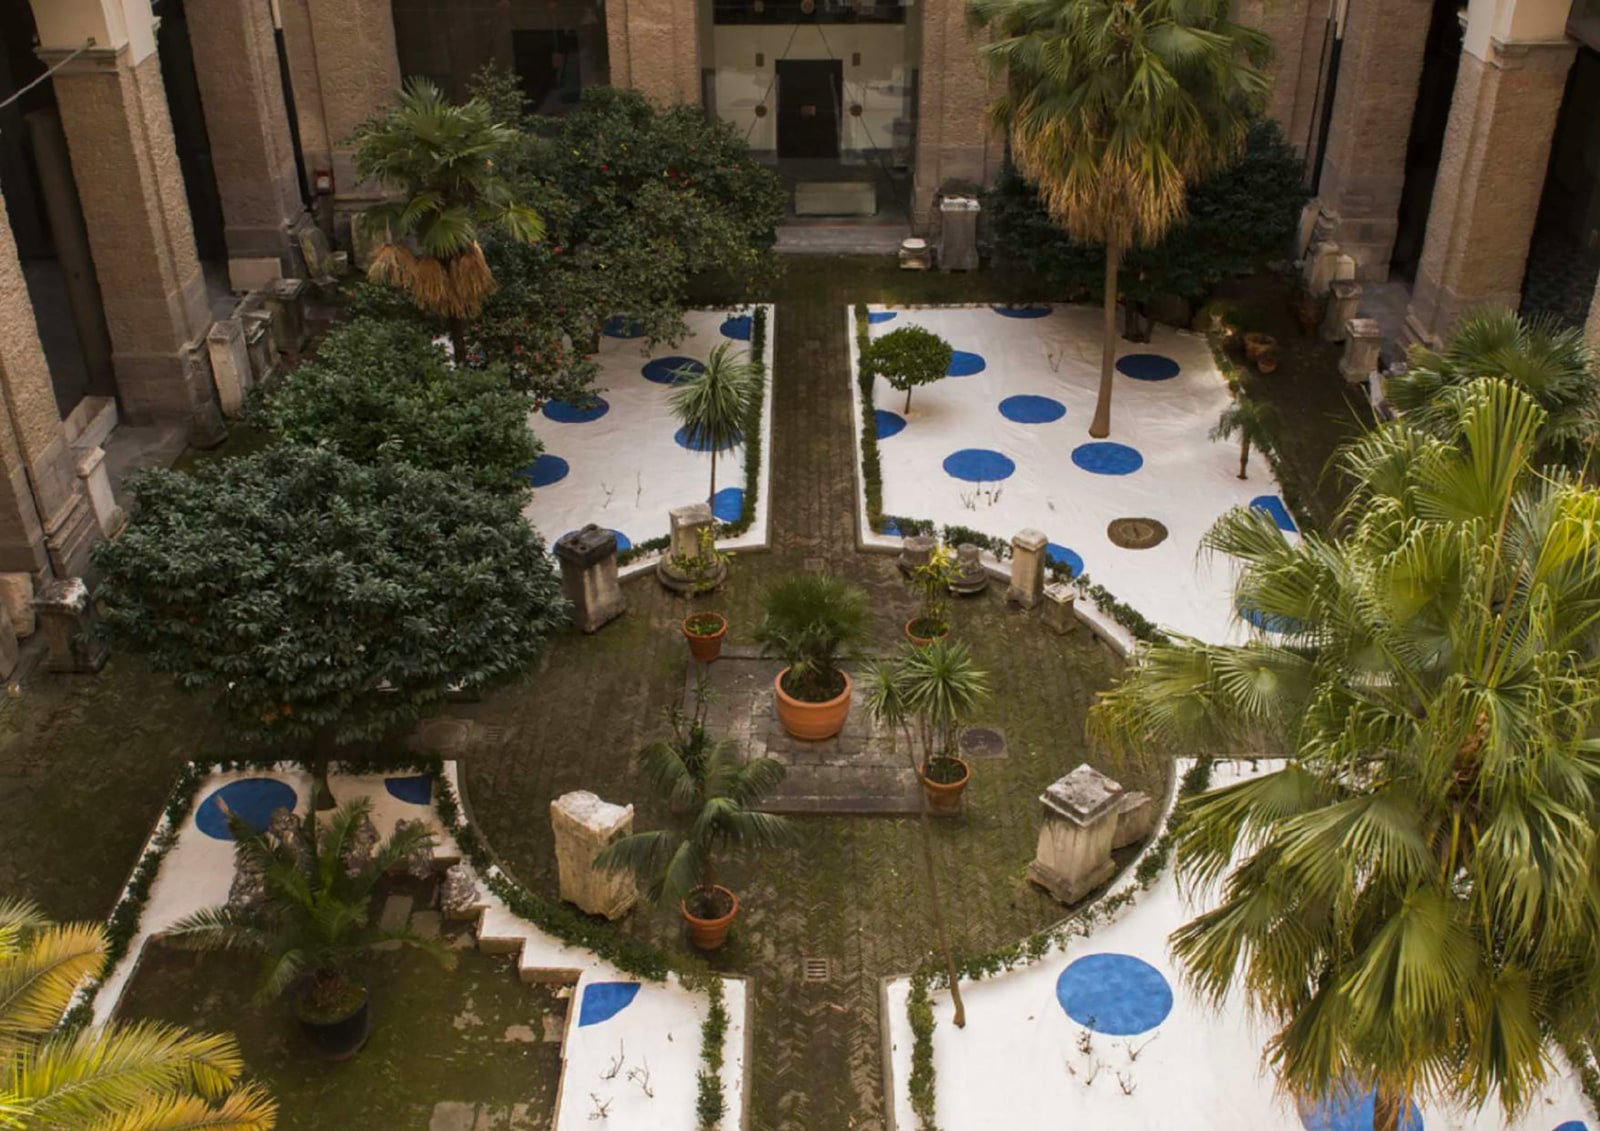 Installation view, Isabella Ducrot, Effimero, Museo Archeologico Nazionale di Napoli, Naples, 2015